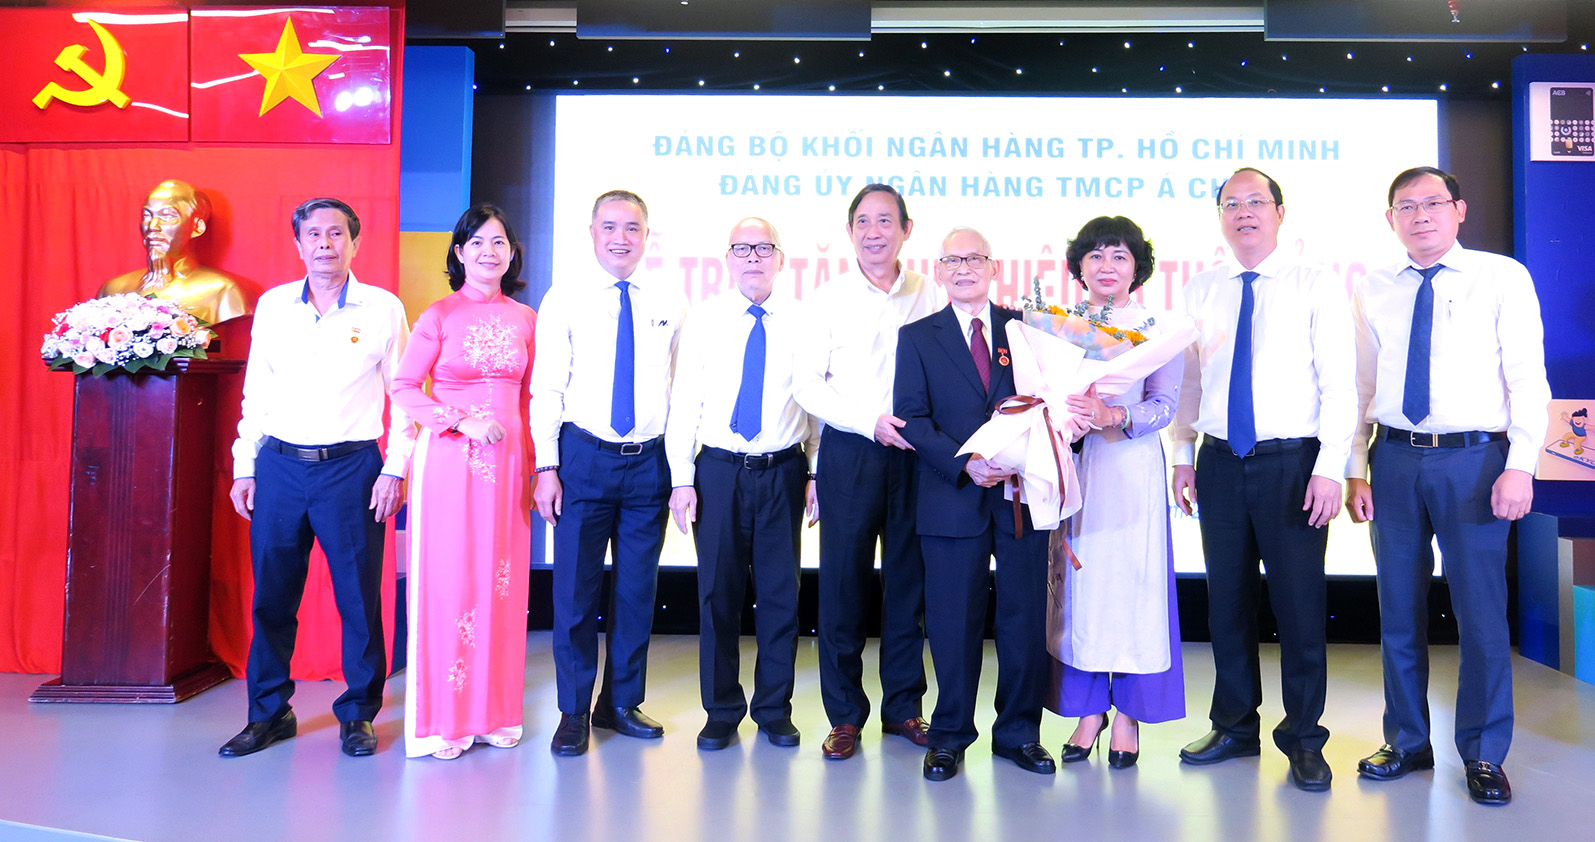 Đồng chí Nguyễn Chí Thành nhận hoa chúc mừng từ lãnh đạo Thành ủy và ngành Ngân hàng TP. Hồ Chí Minh.